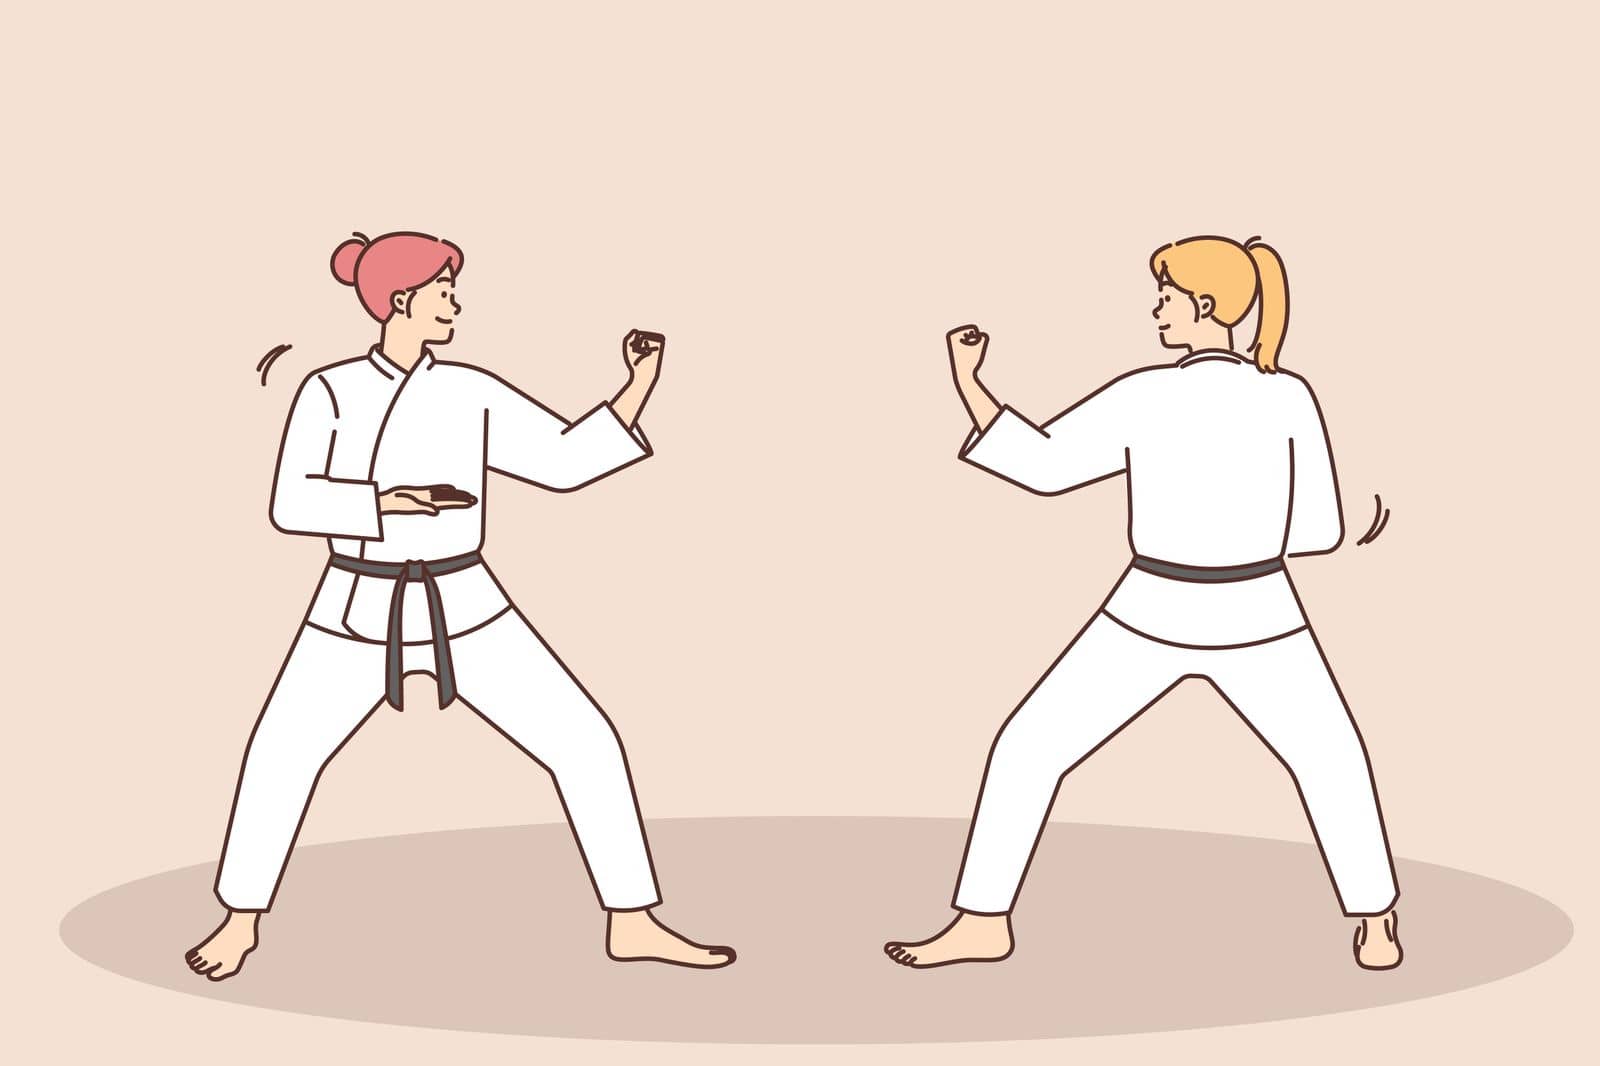 Women practice martial arts by Vasilyeu